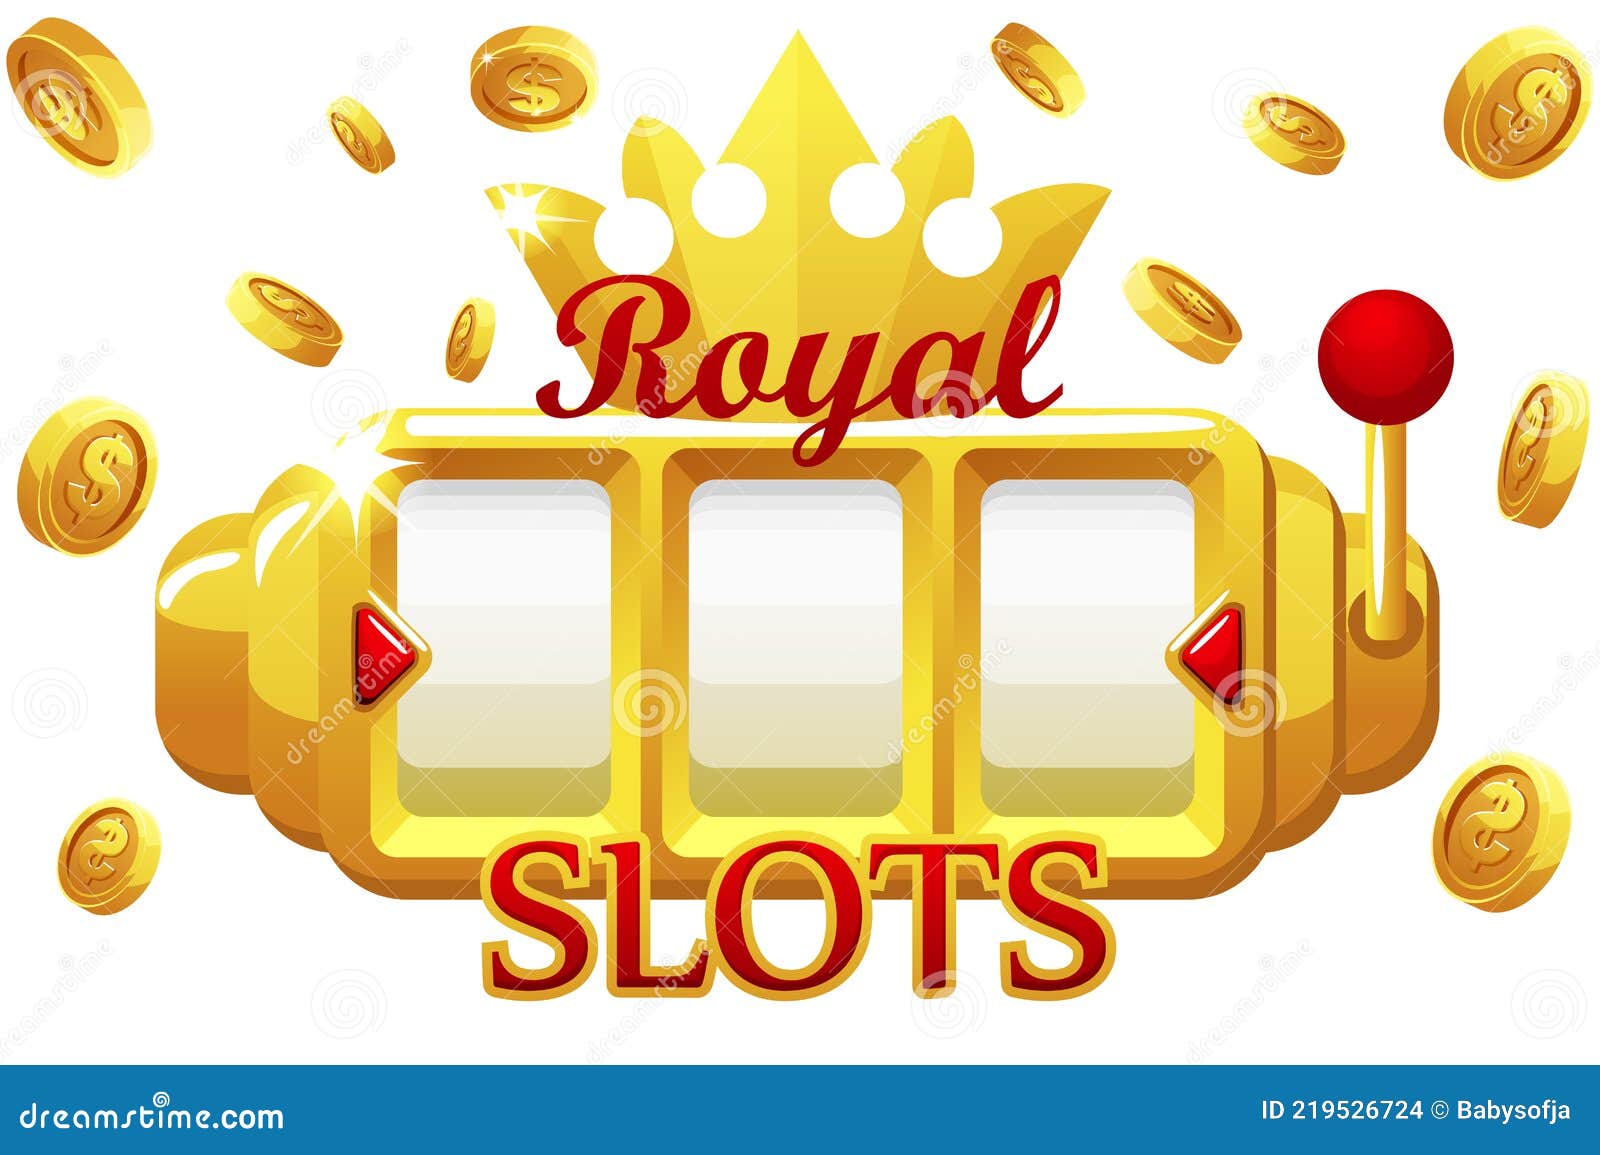 Slots 777 royal Online Slots